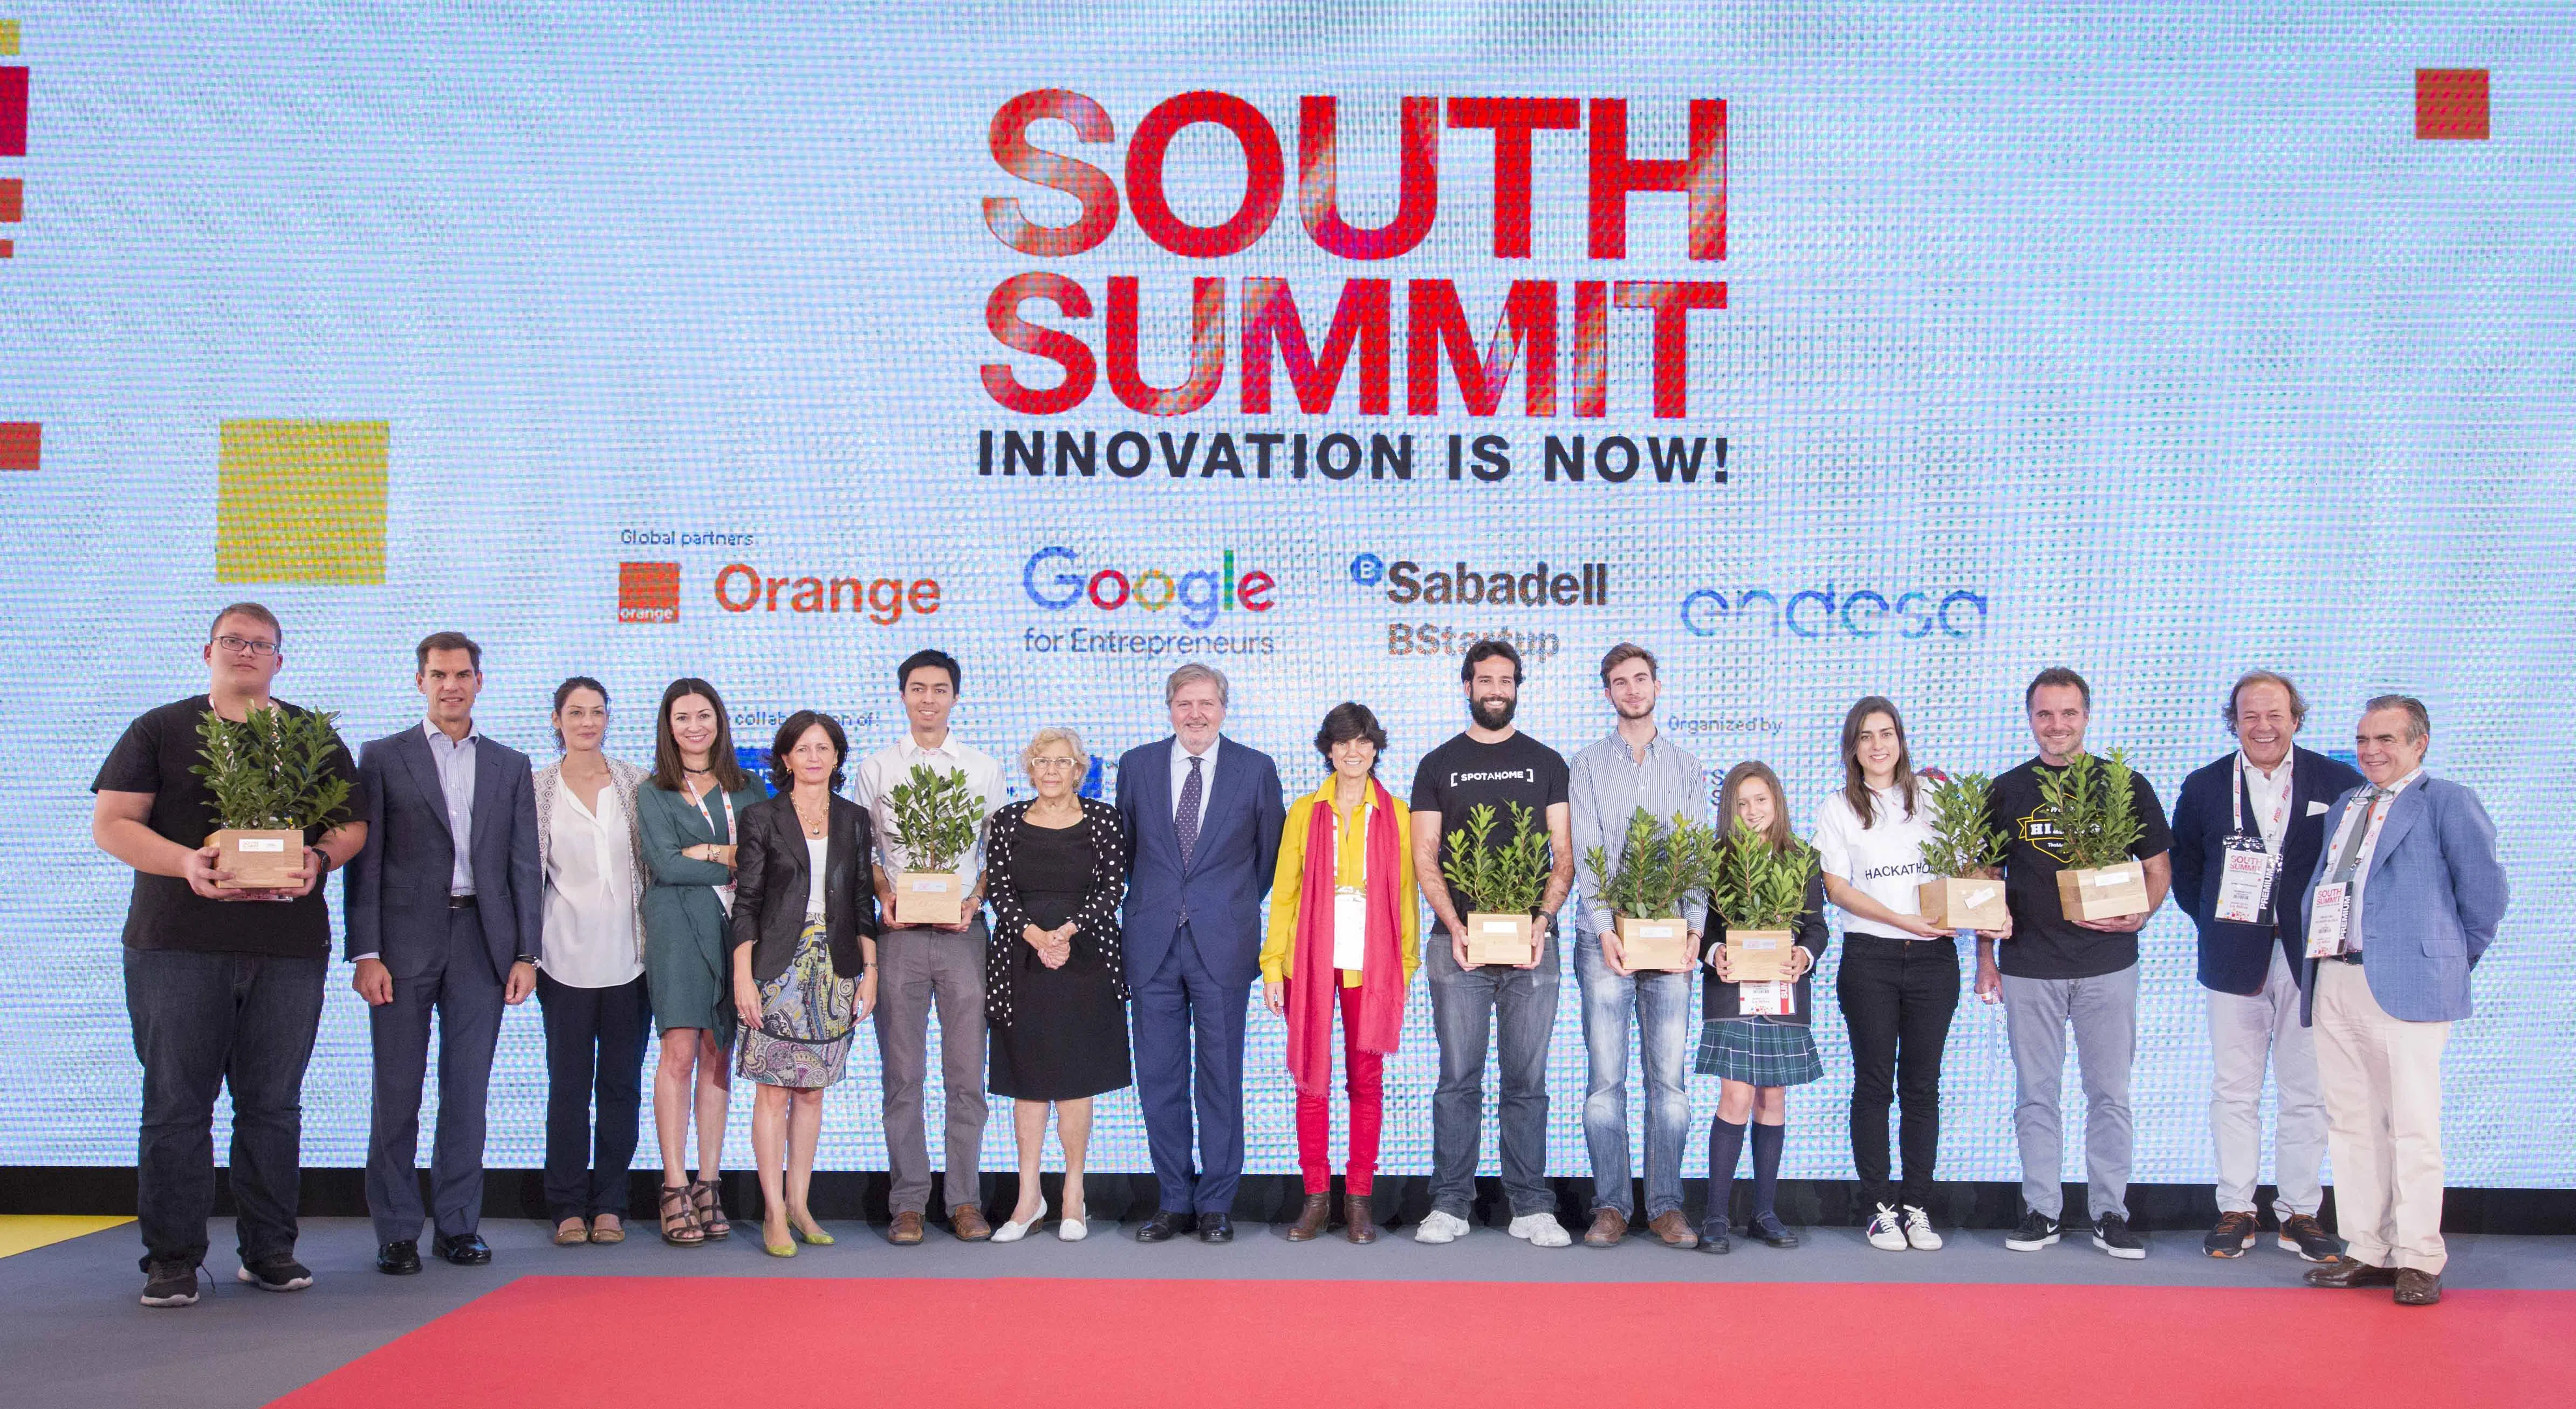 El #SouthSummit2016 convierte a Madrid en la capital del emprendimiento tecnológico